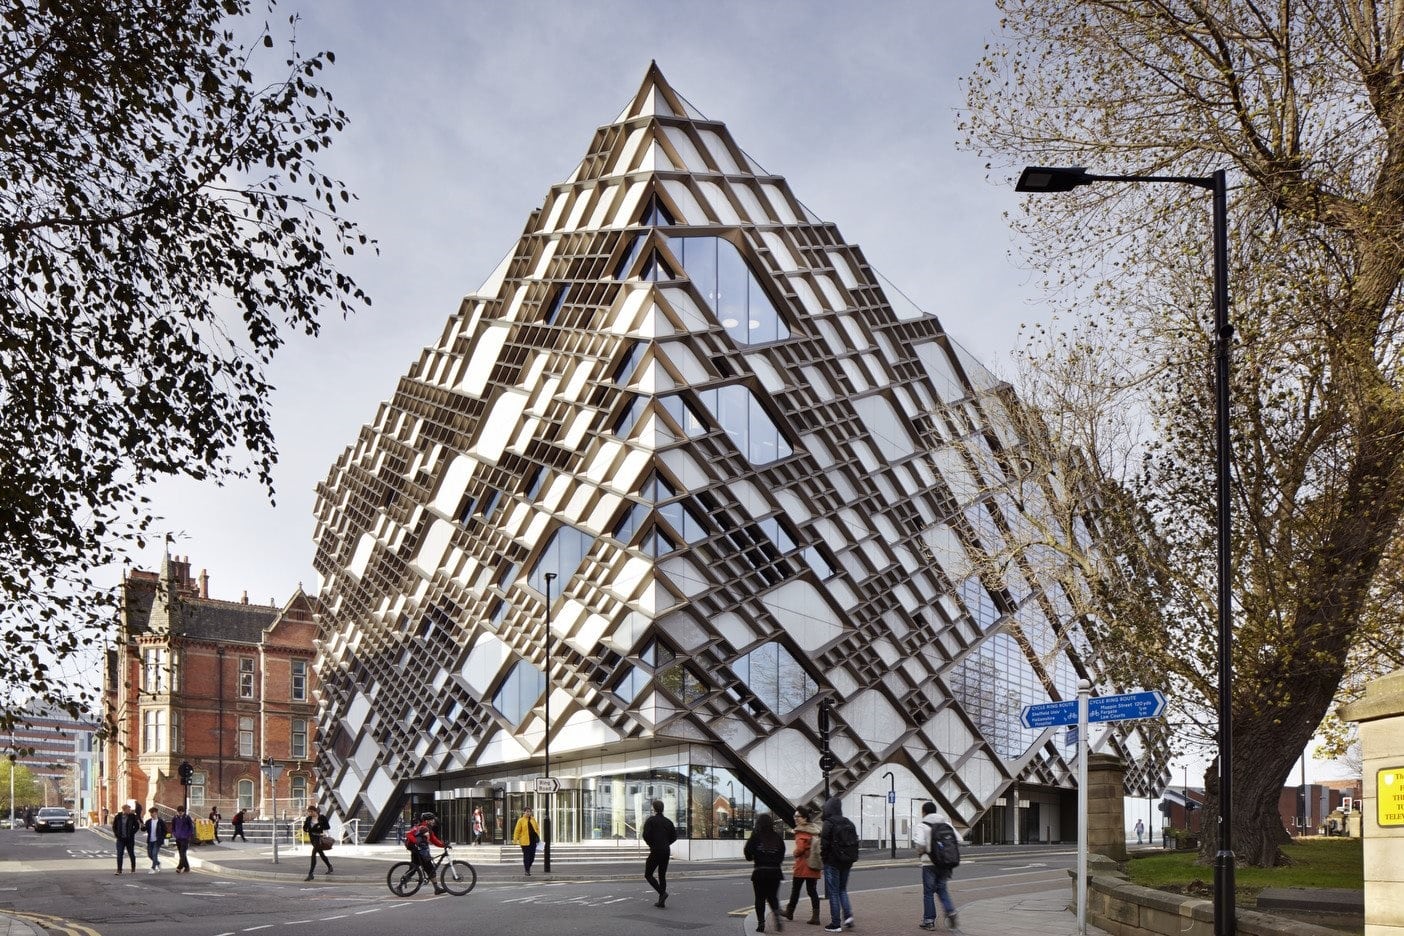 University of Sheffield's Diamond Building in VR